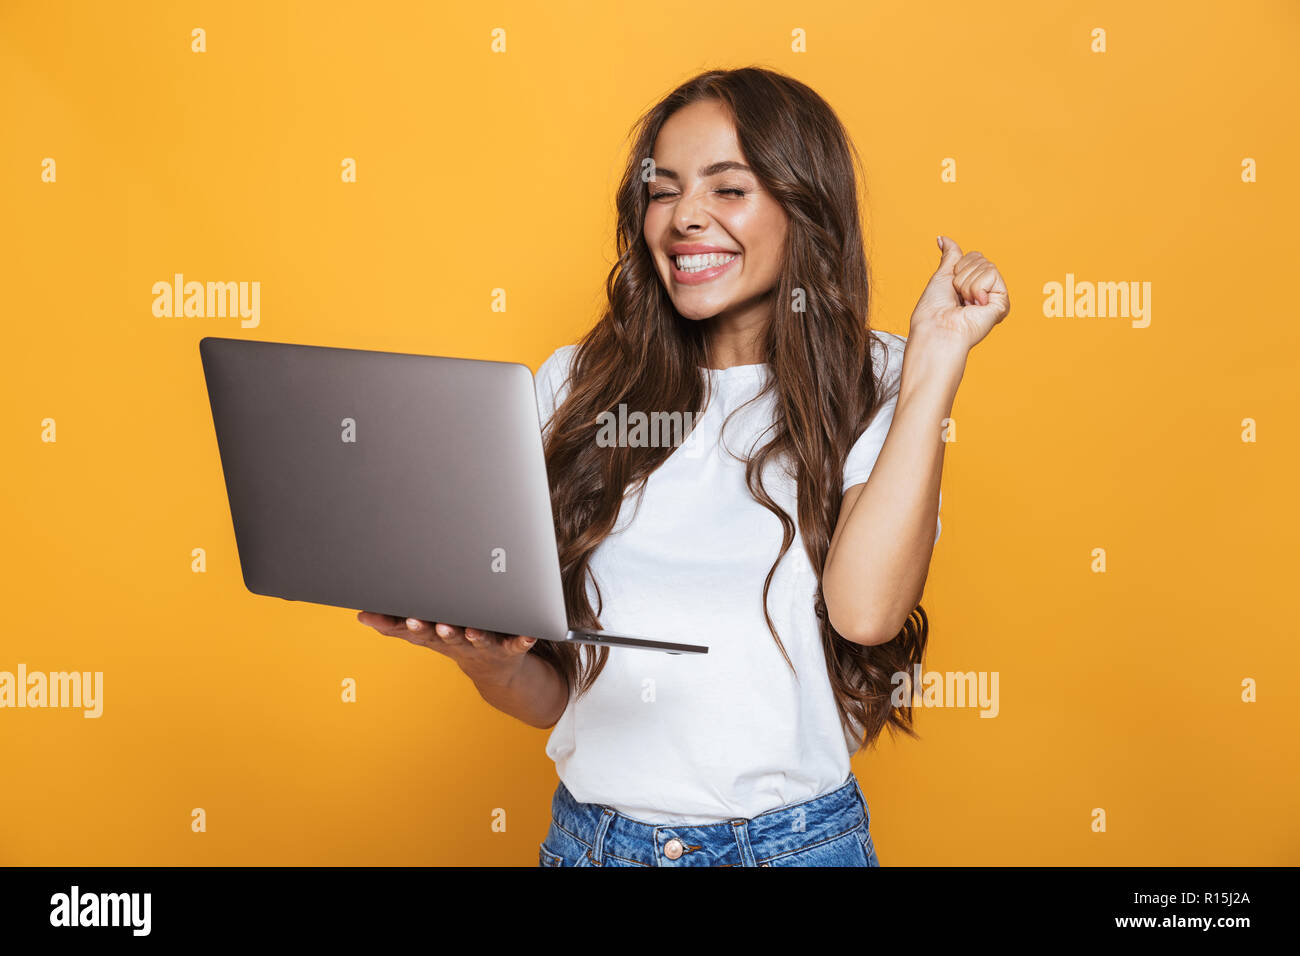 Portrait de femme brune 20s avec de longs cheveux gris et en joie ordinateur portable isolé sur fond jaune Banque D'Images